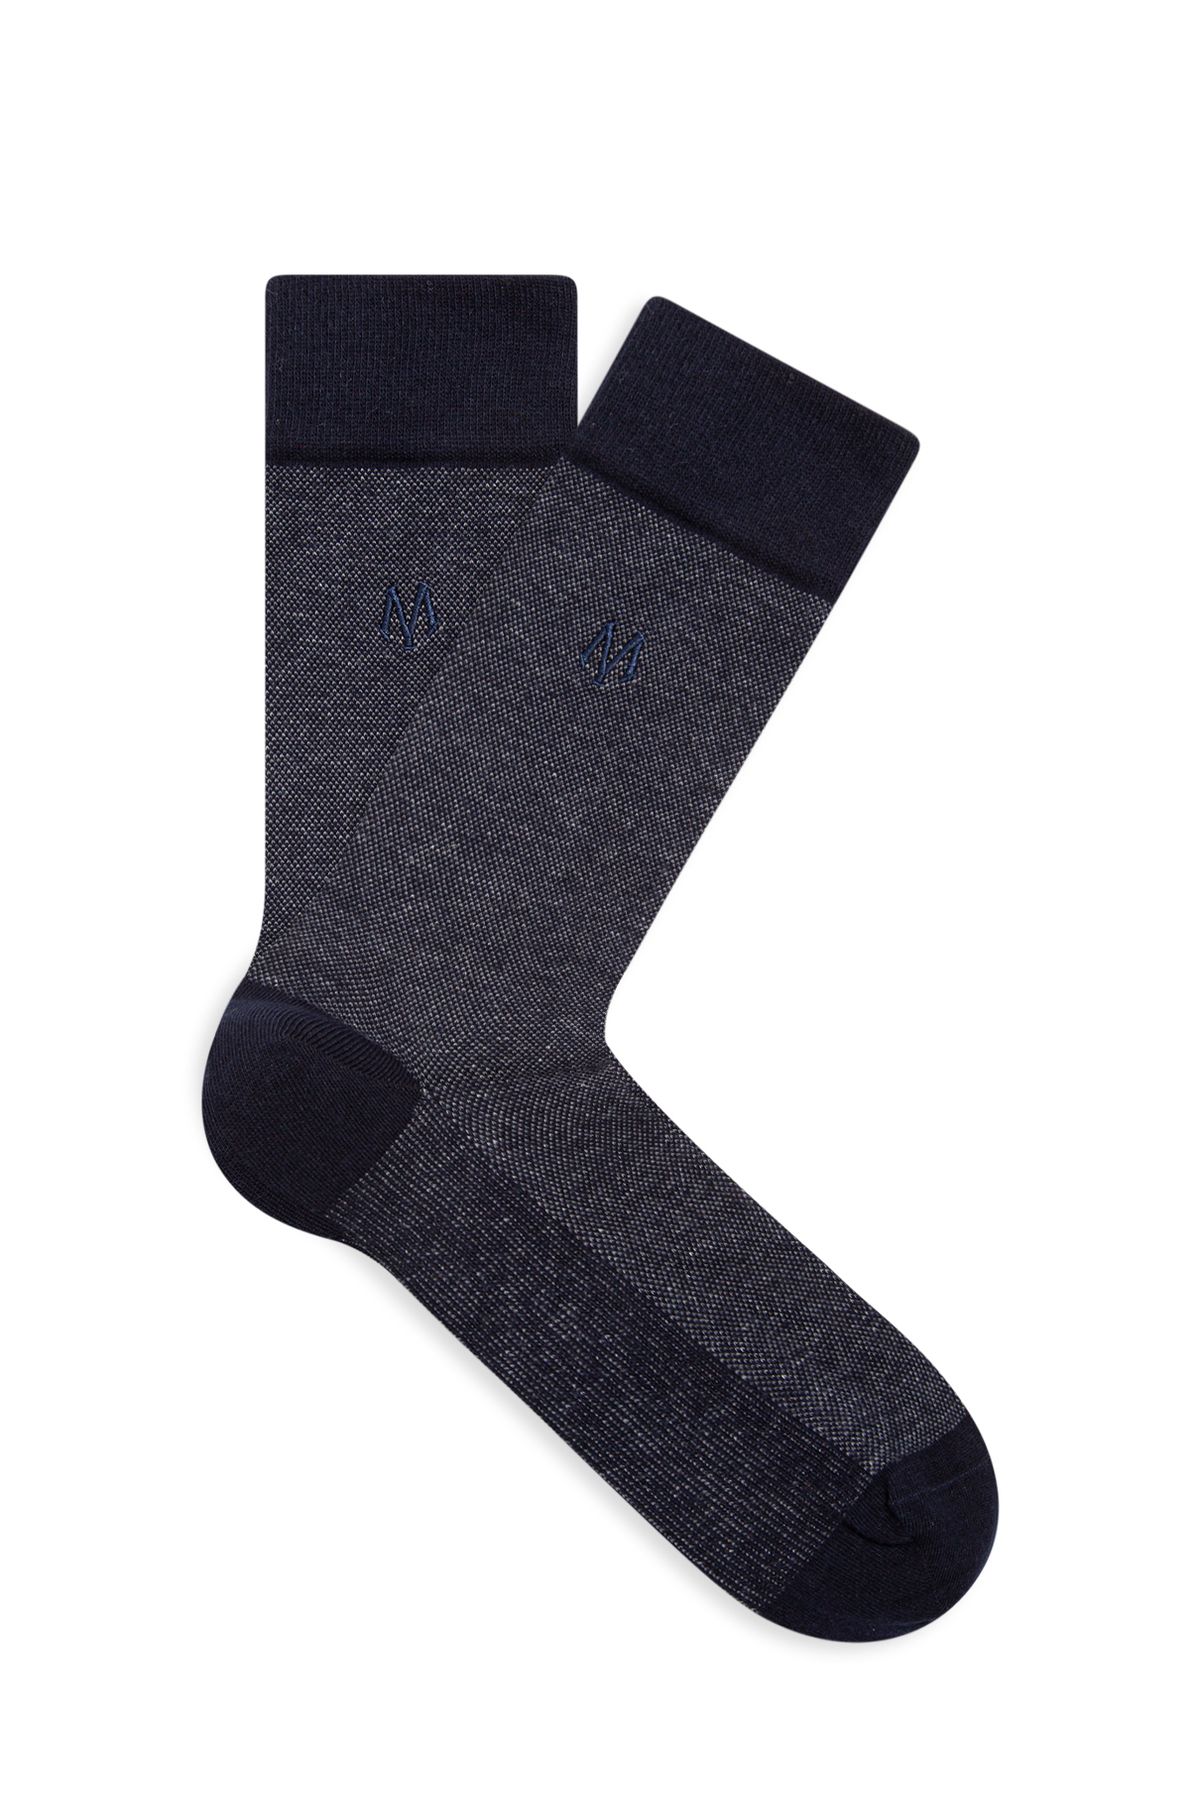 Mavi Baskılı Lacivert Soket Çorap 091760-28417